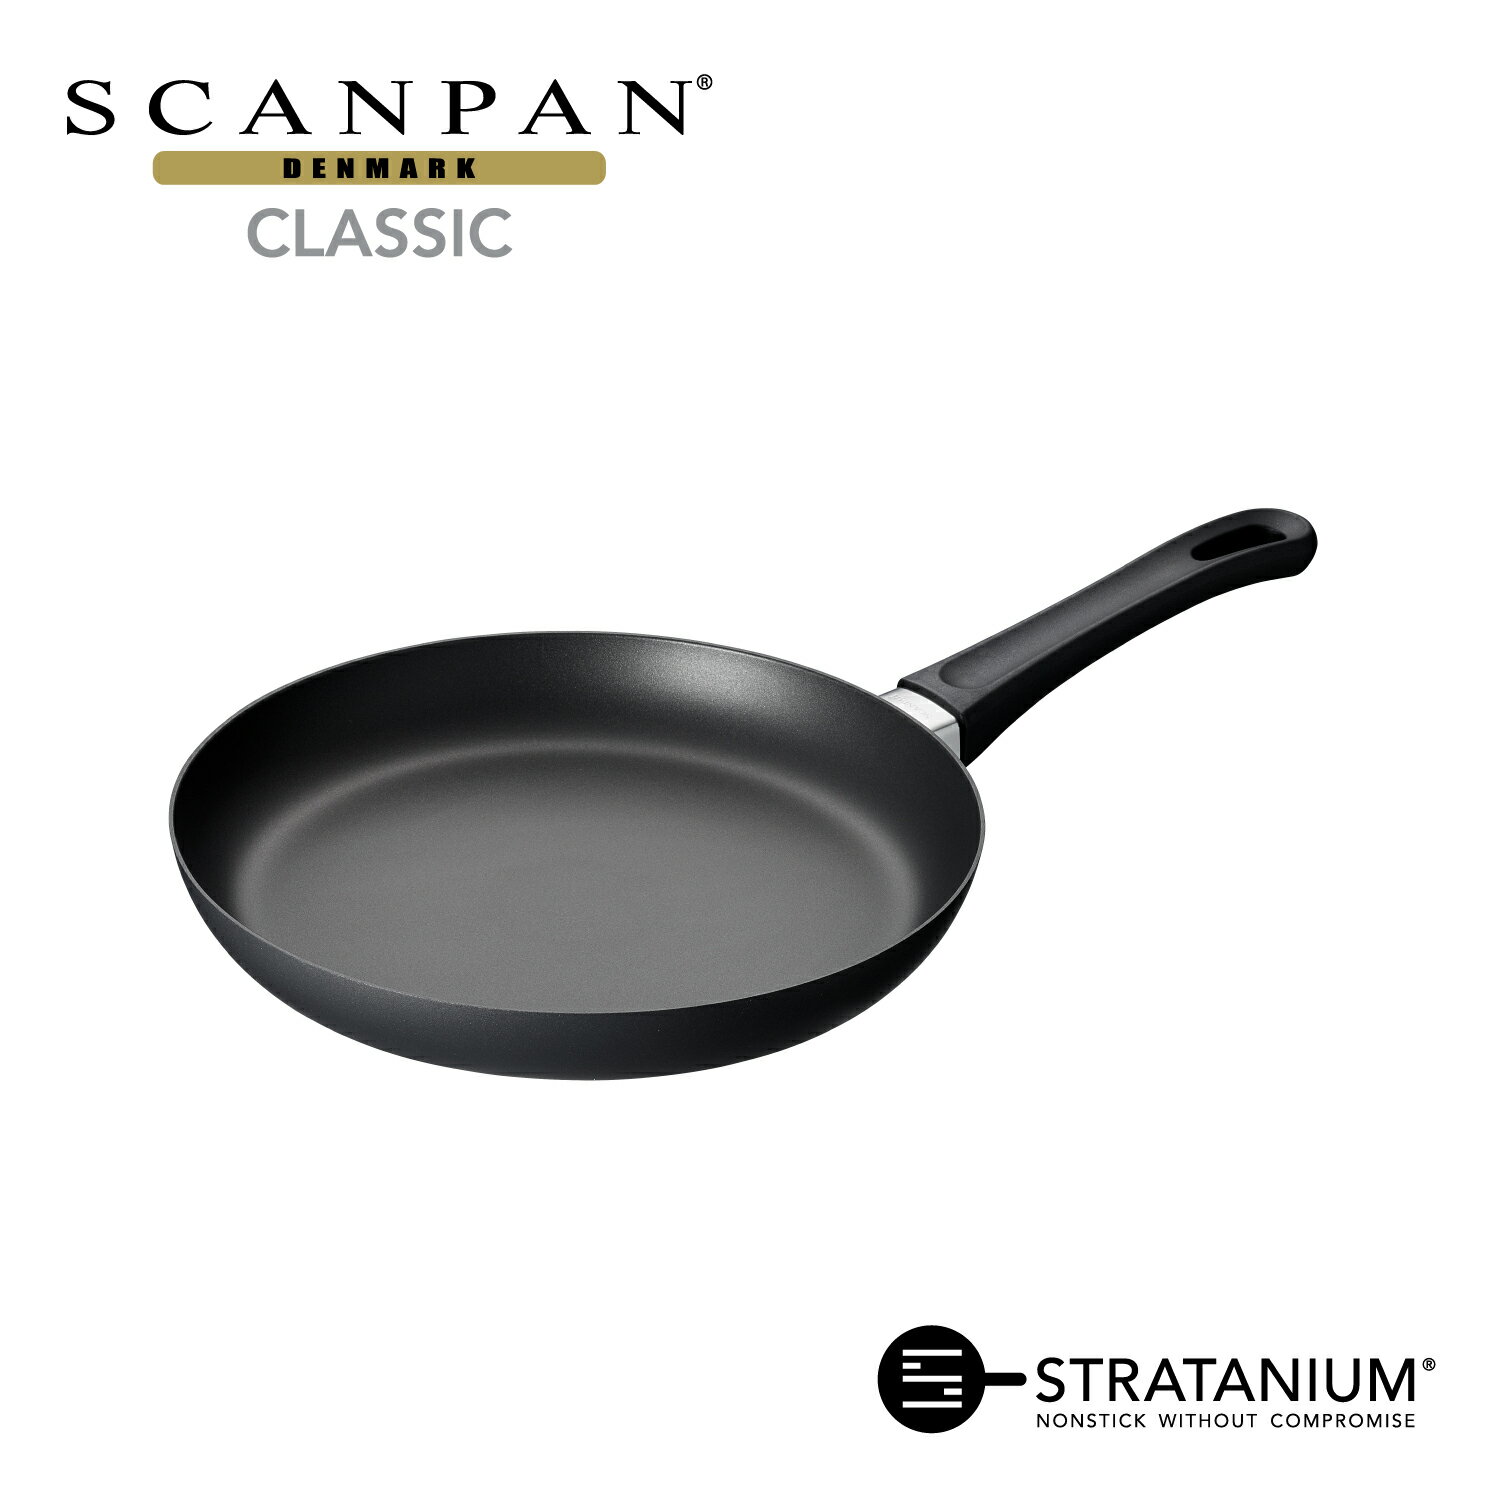 スキャンパン Classic シリーズ フライパン 26cm 浅型フライパン 炒め物 環境に配慮 オーブン調理 ノンスティック 安全なフライパン フッ素加工 SCANPAN デンマーク STRATANIUM